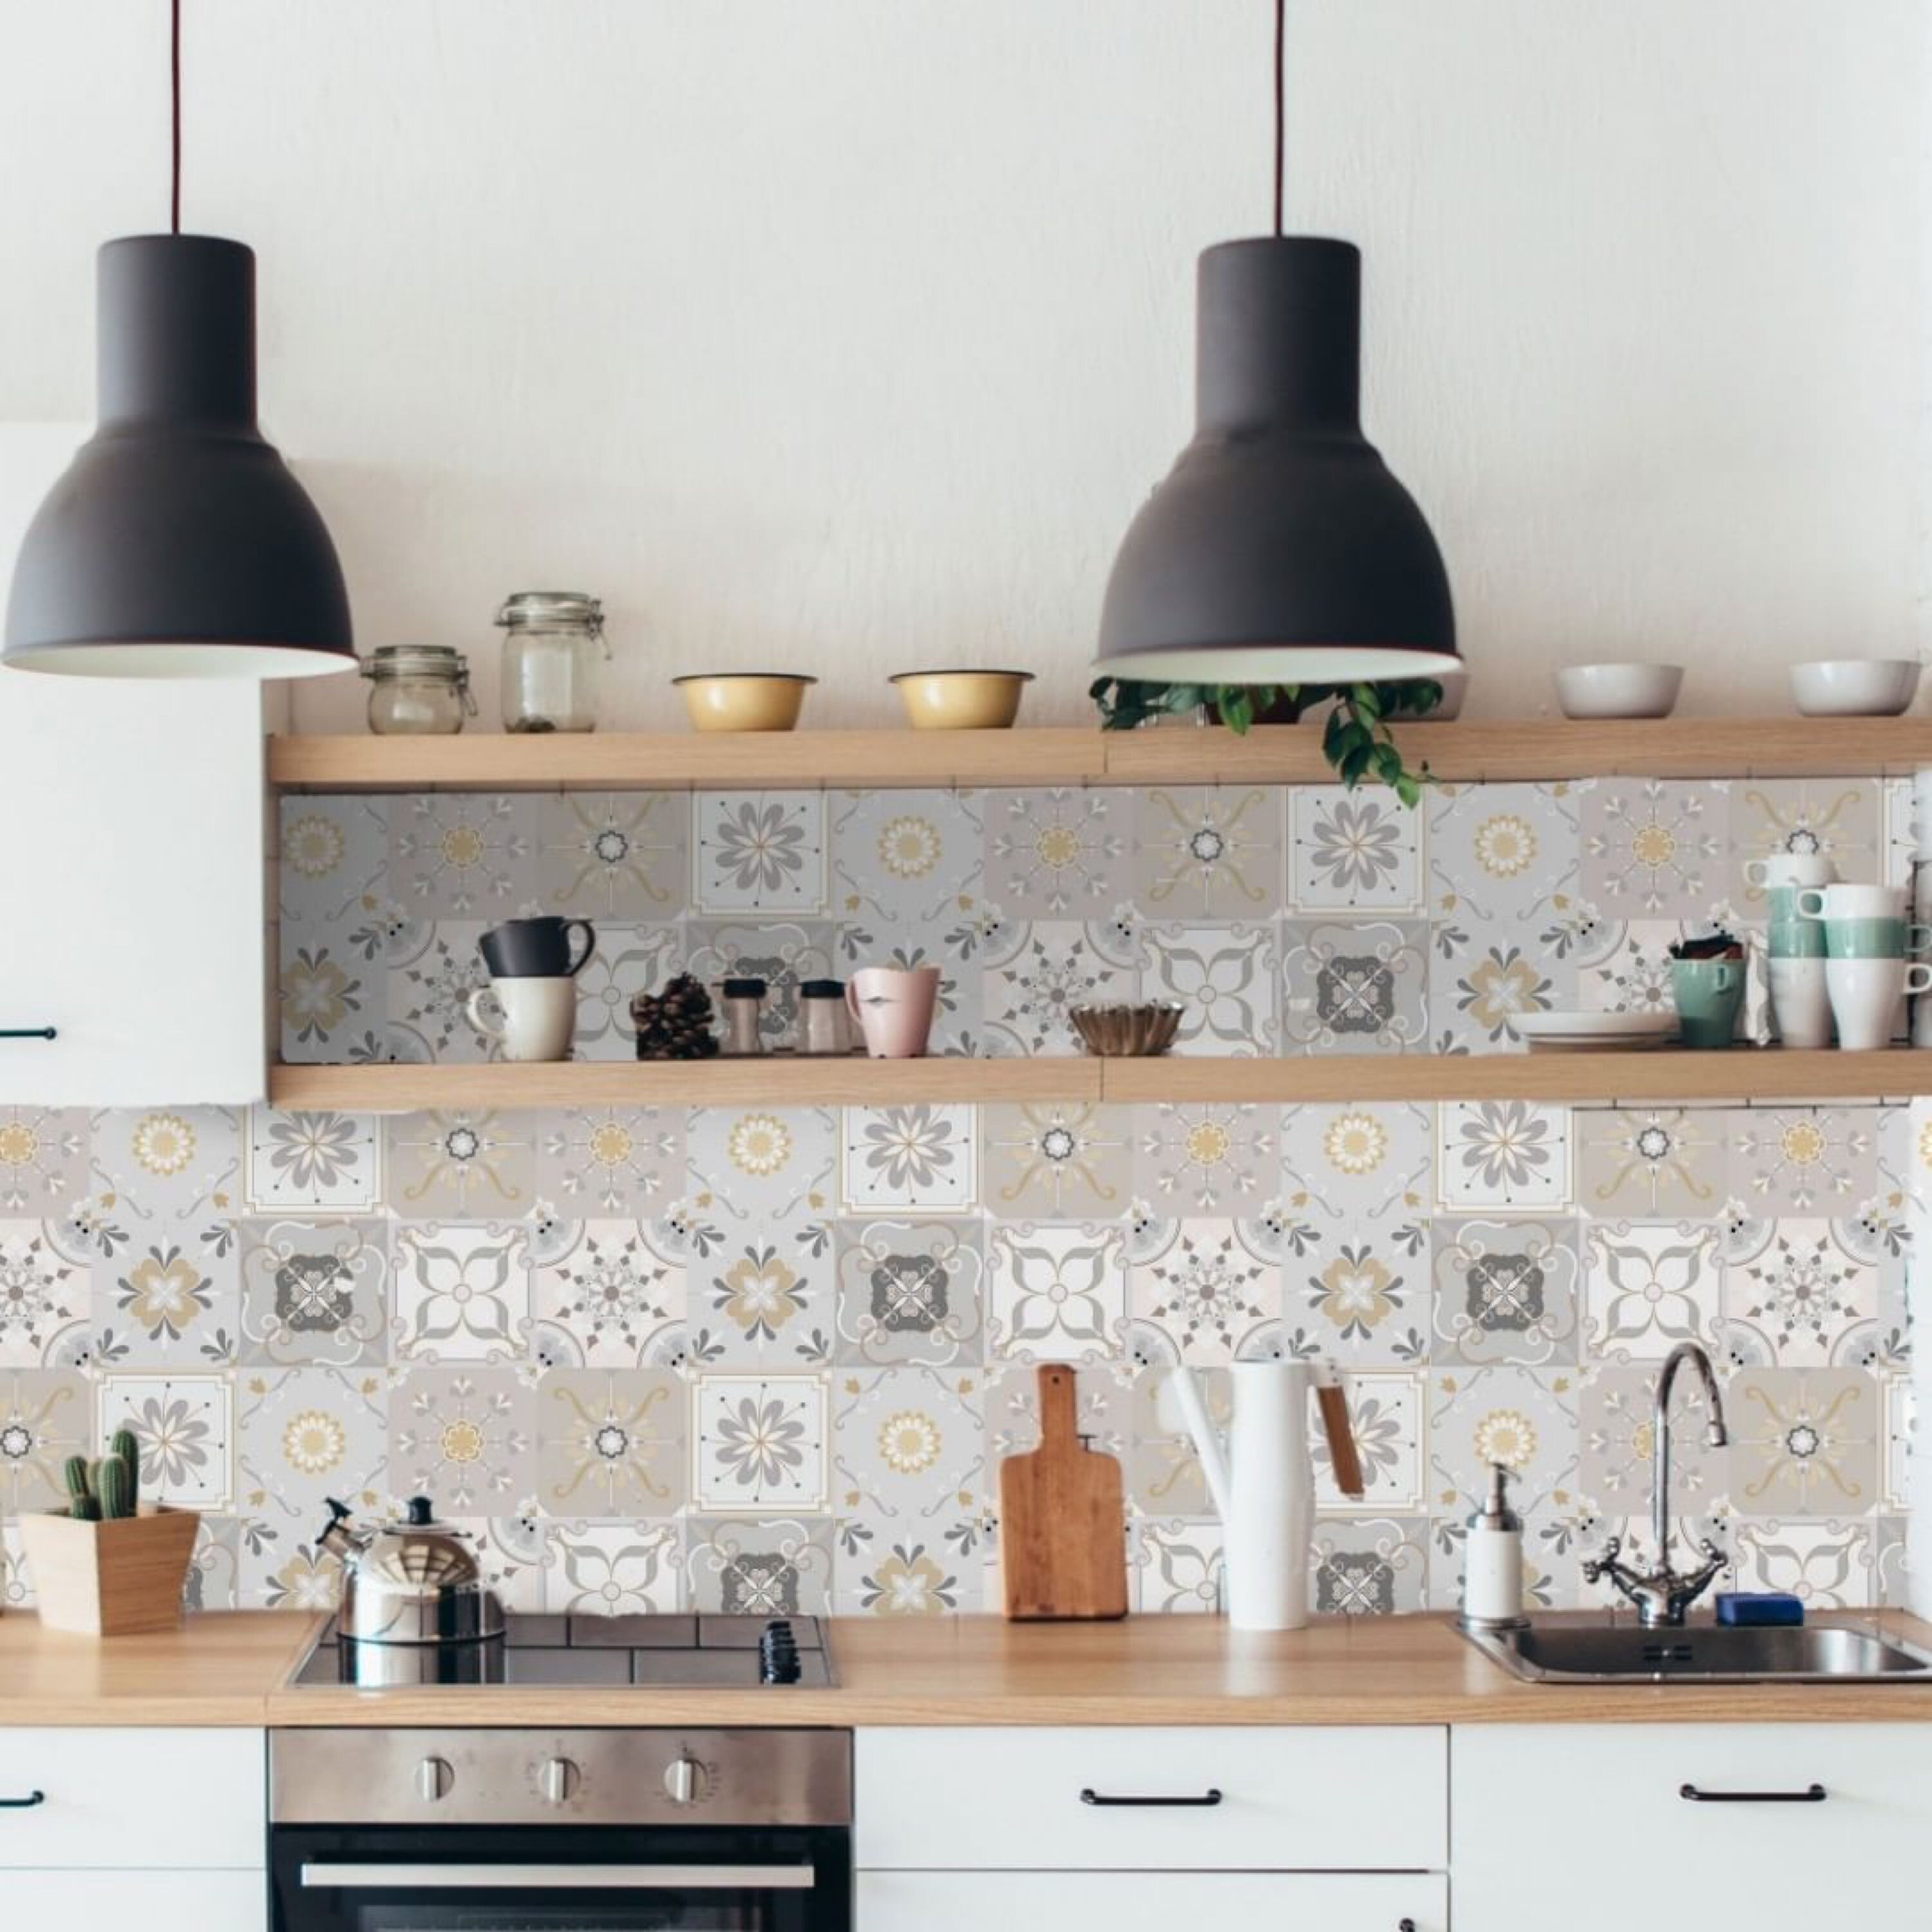 6 X Words For Bathroom Tile Stickers Decals Kitchen Wall Vinyl Waterproof Tiles 